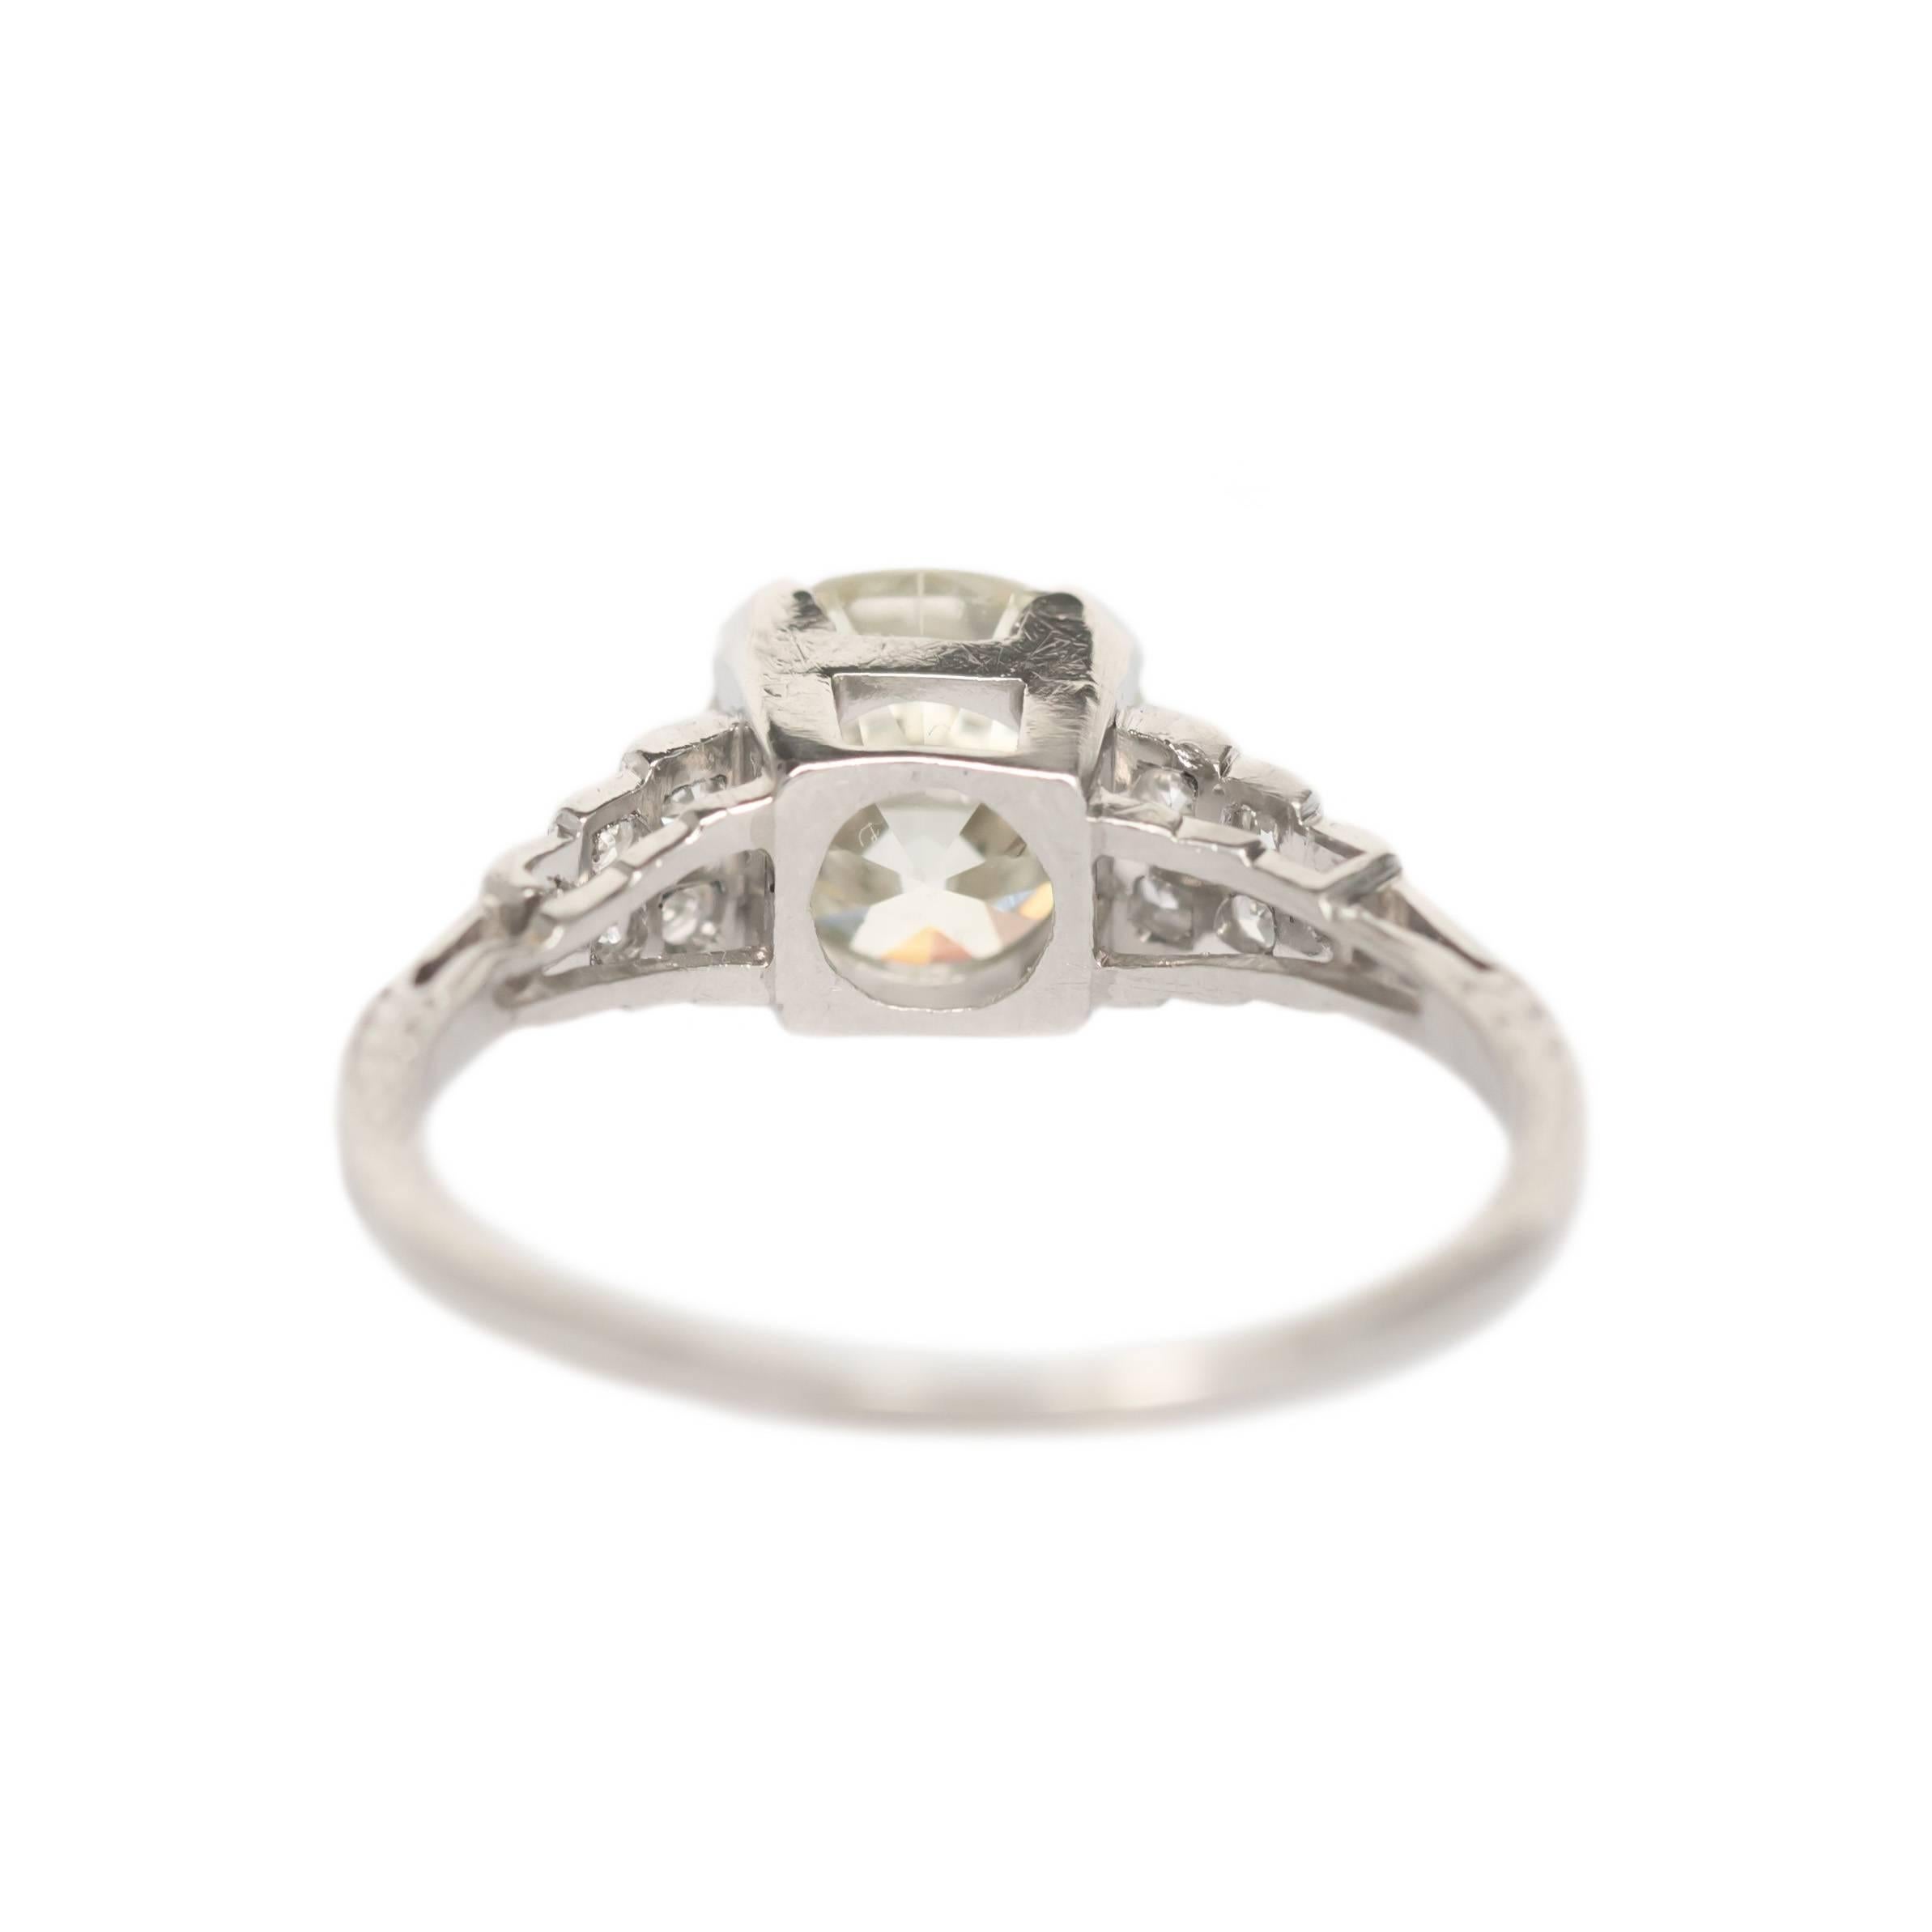 2.75 carat diamond ring price